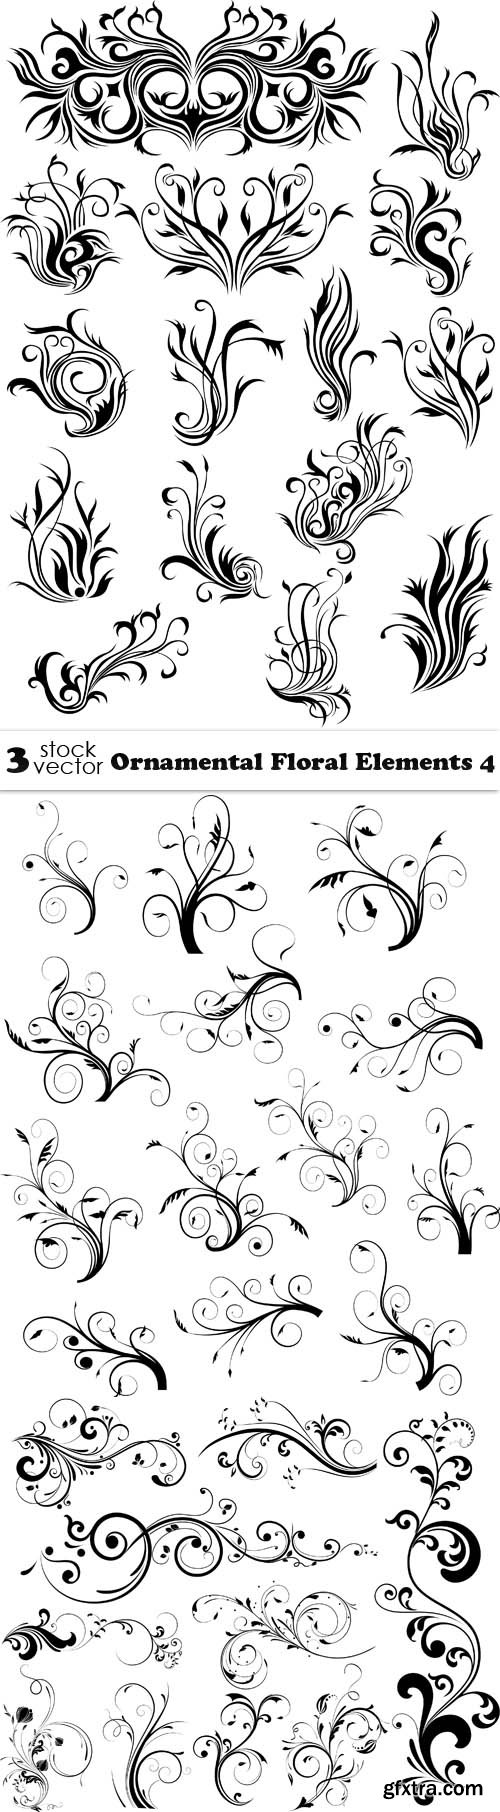 Vectors - Ornamental Floral Elements 4